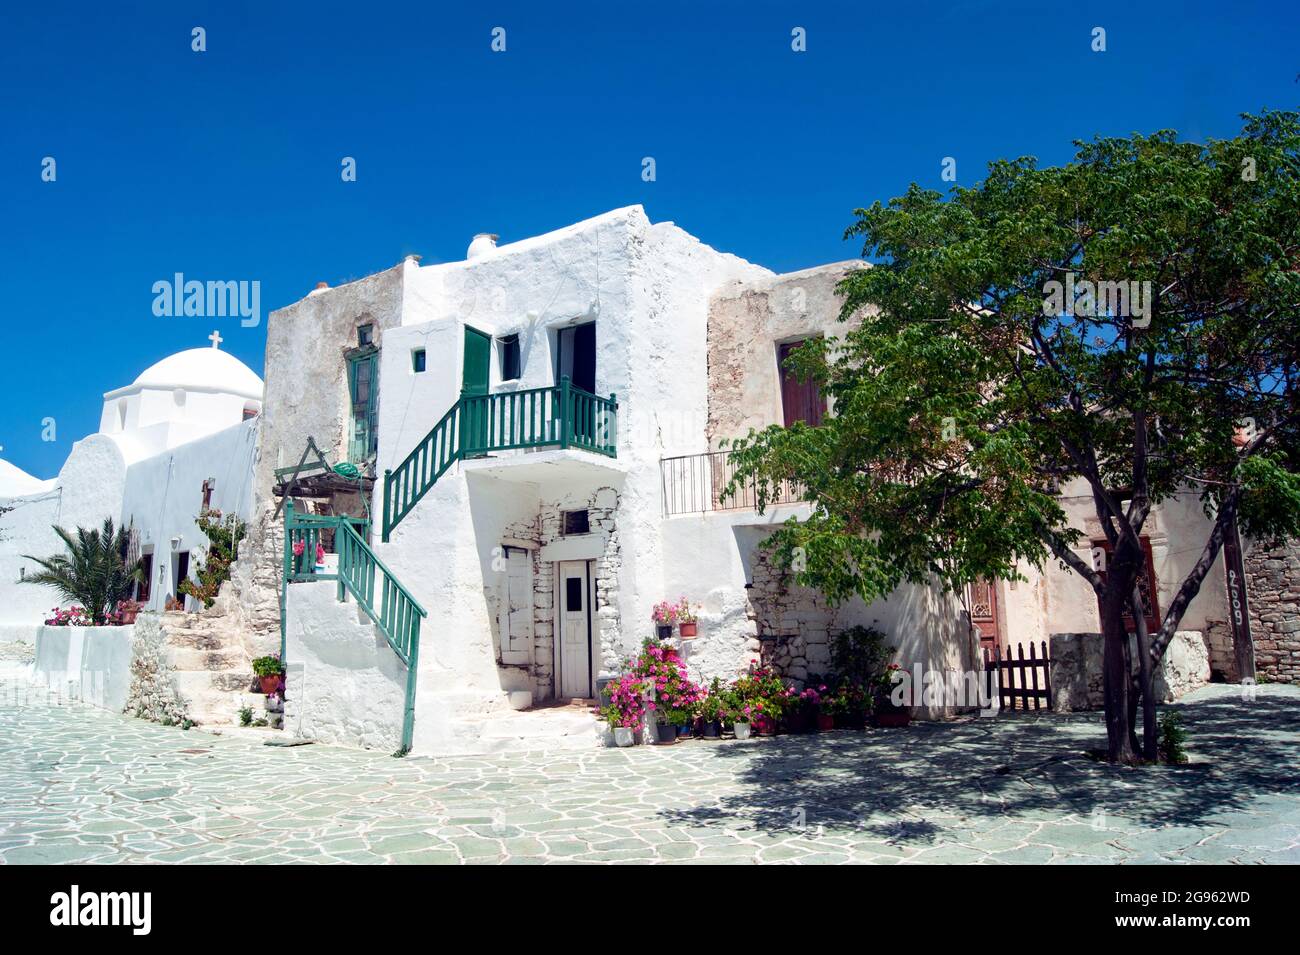 La vieille ville historique de l'île grecque de Folegandros. Maisons traditionnelles dans la partie fortifiée de la colonie, le Kastro. Bâtiment blanchi à la chaux Banque D'Images